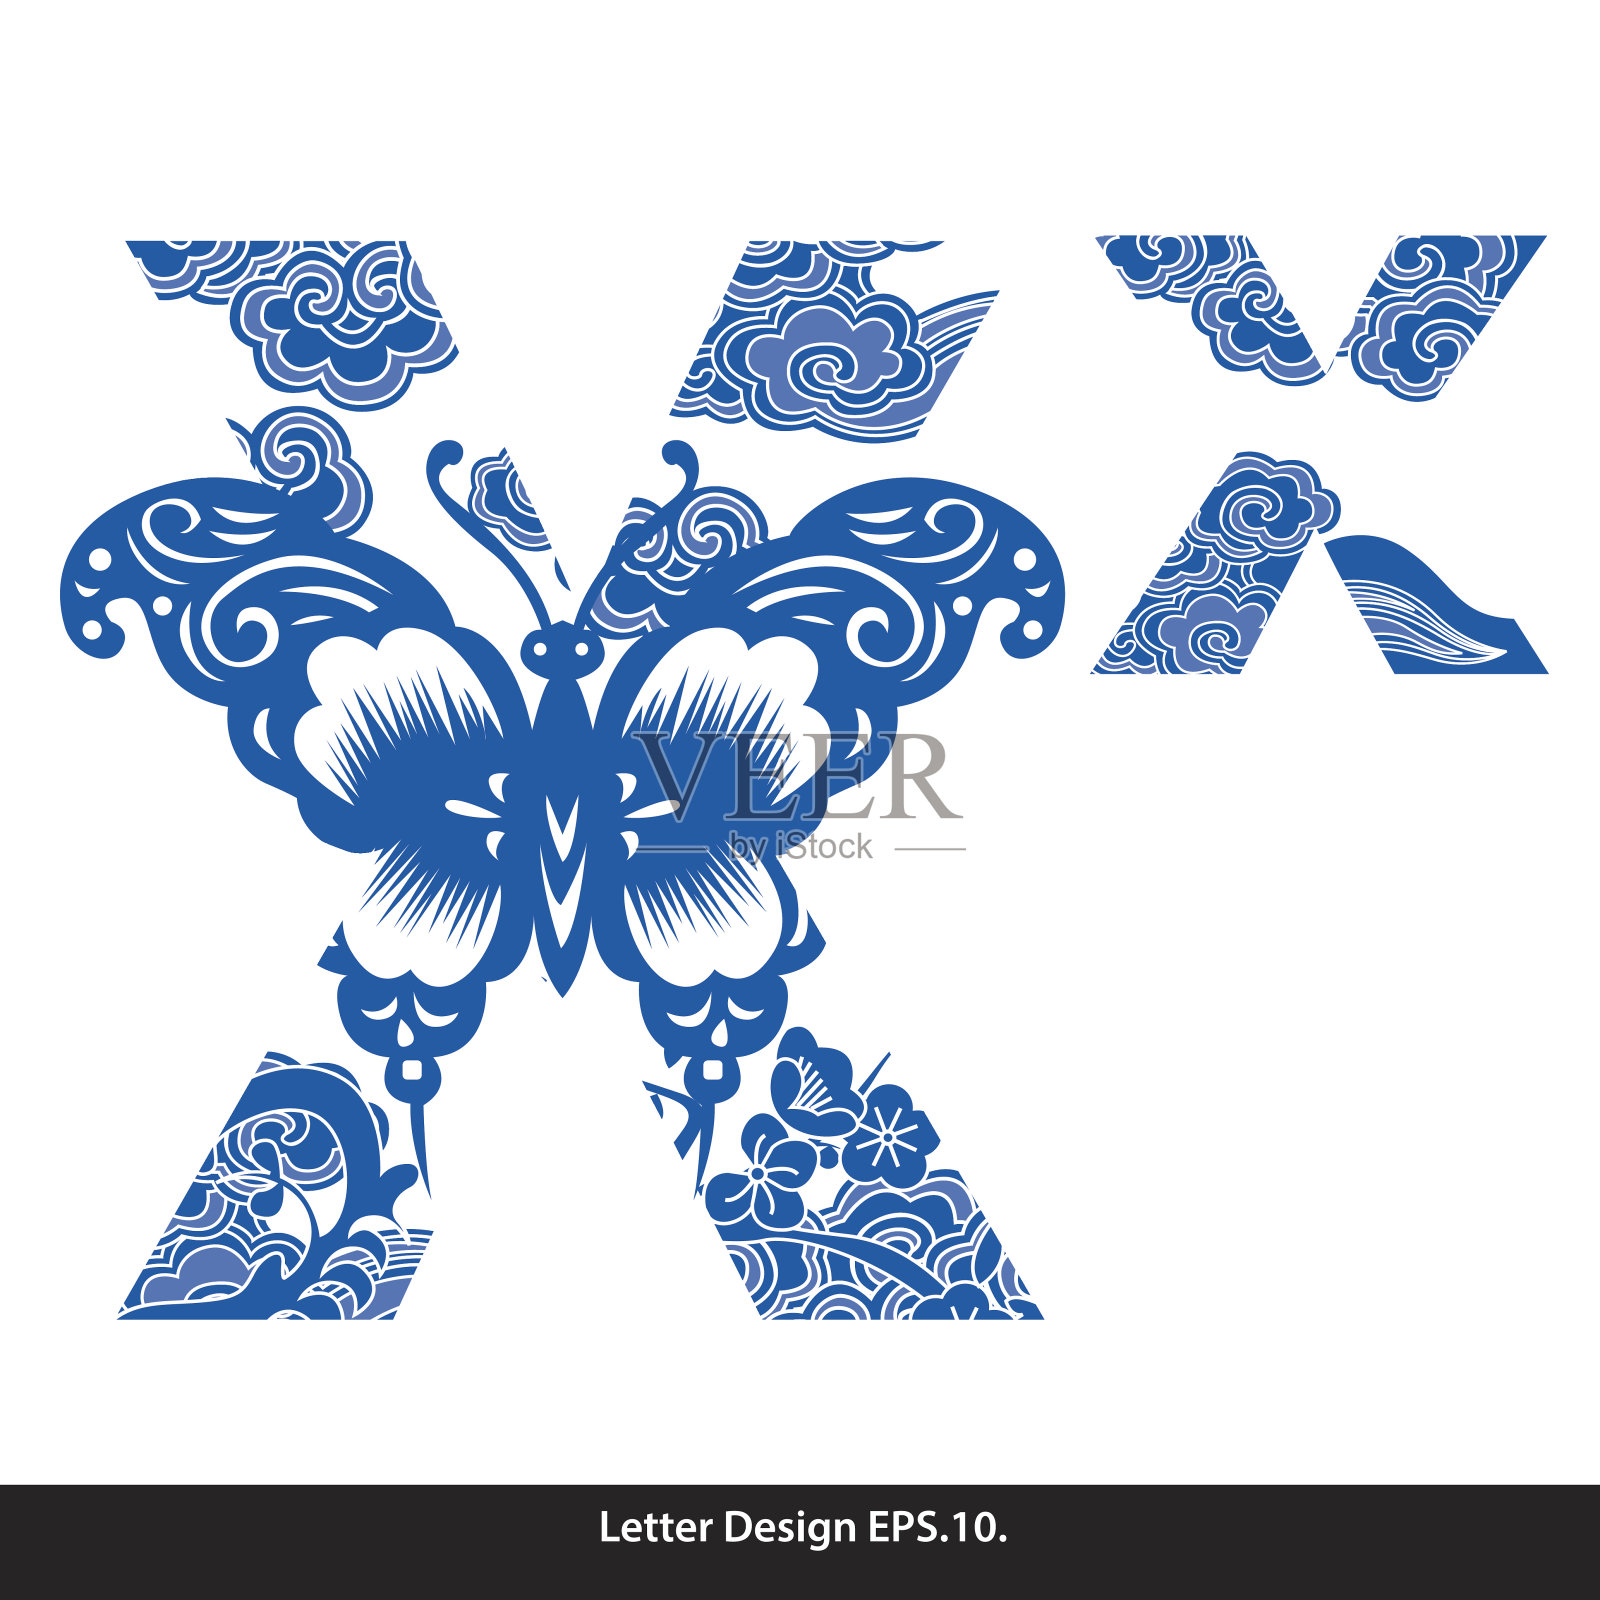 向量东方风格字母磁带x繁体中文插画图片素材